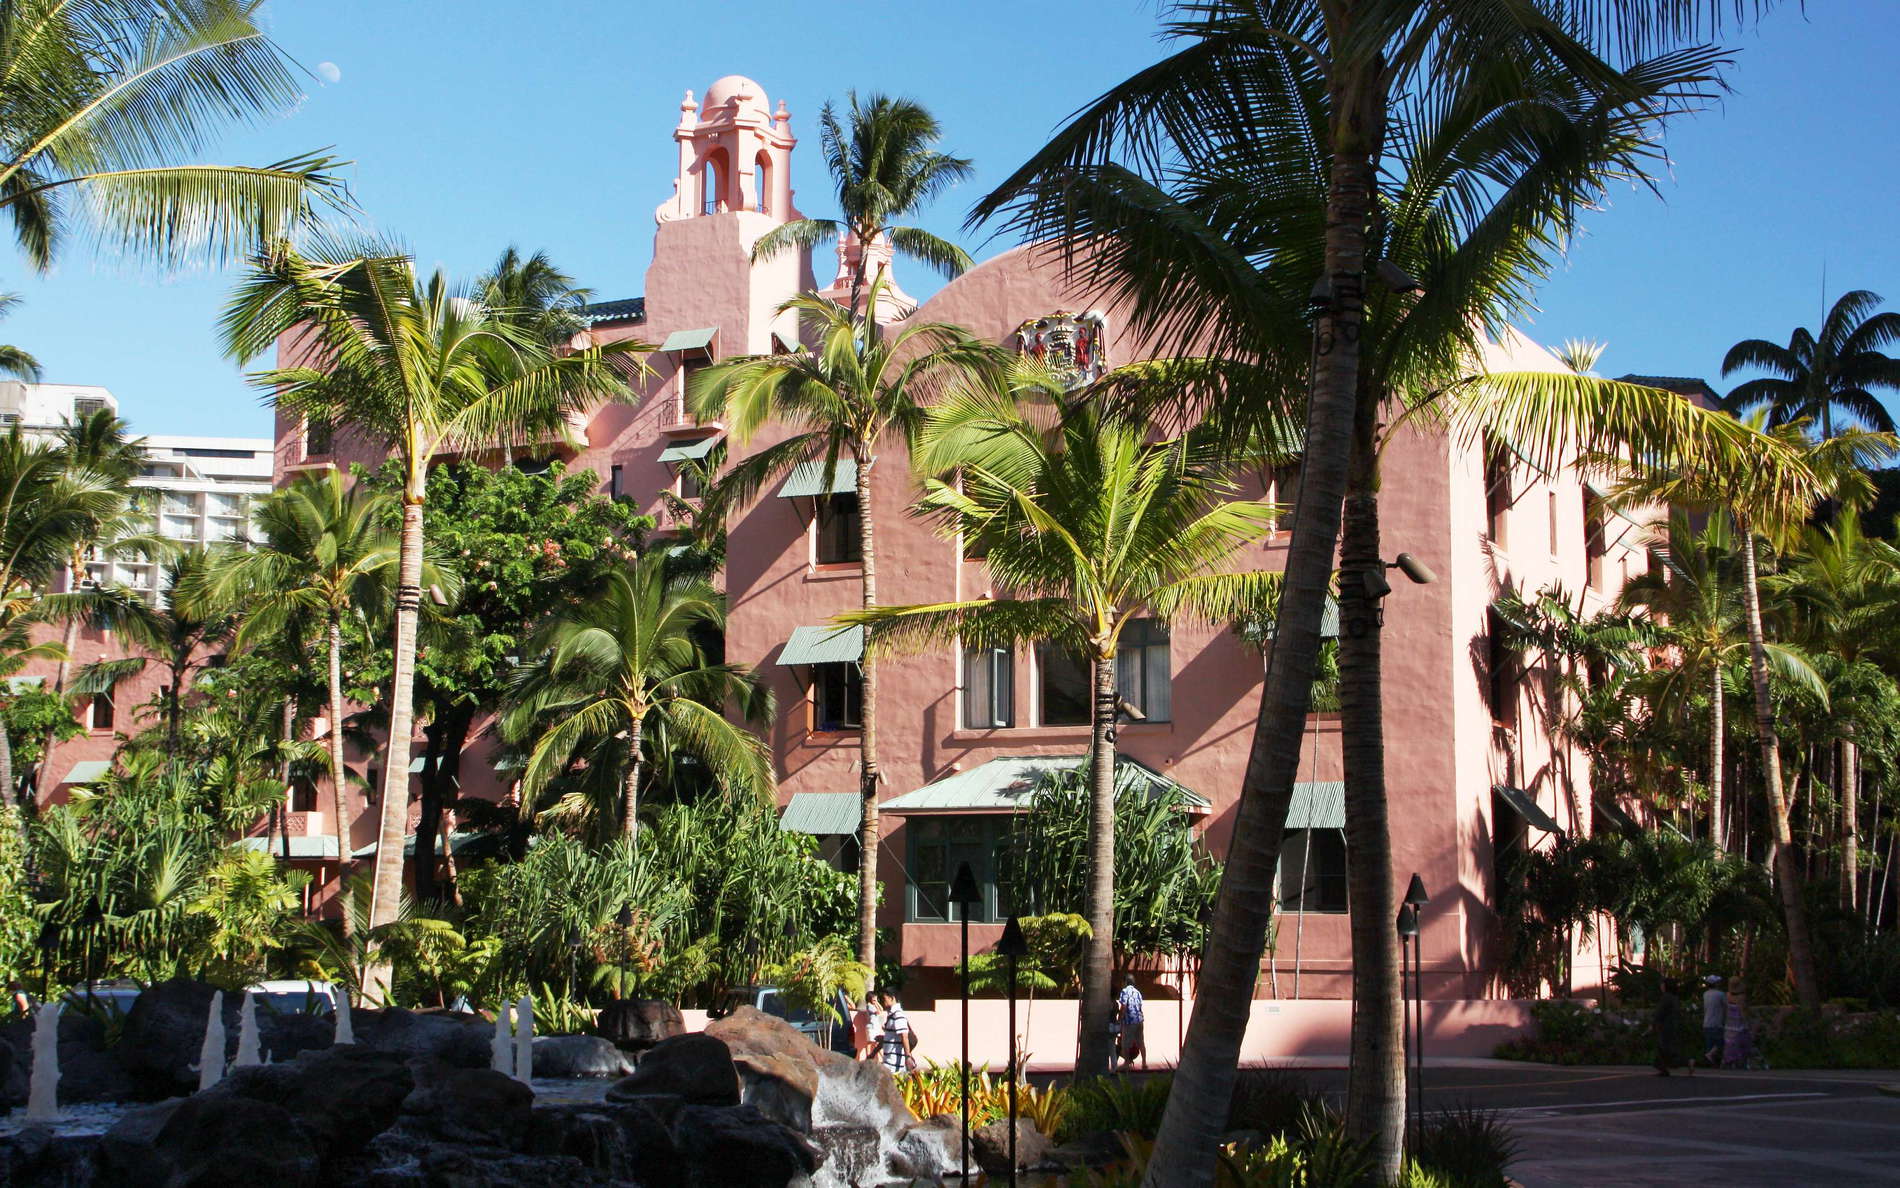 Honolulu  |  Royal Hawaiian Hotel